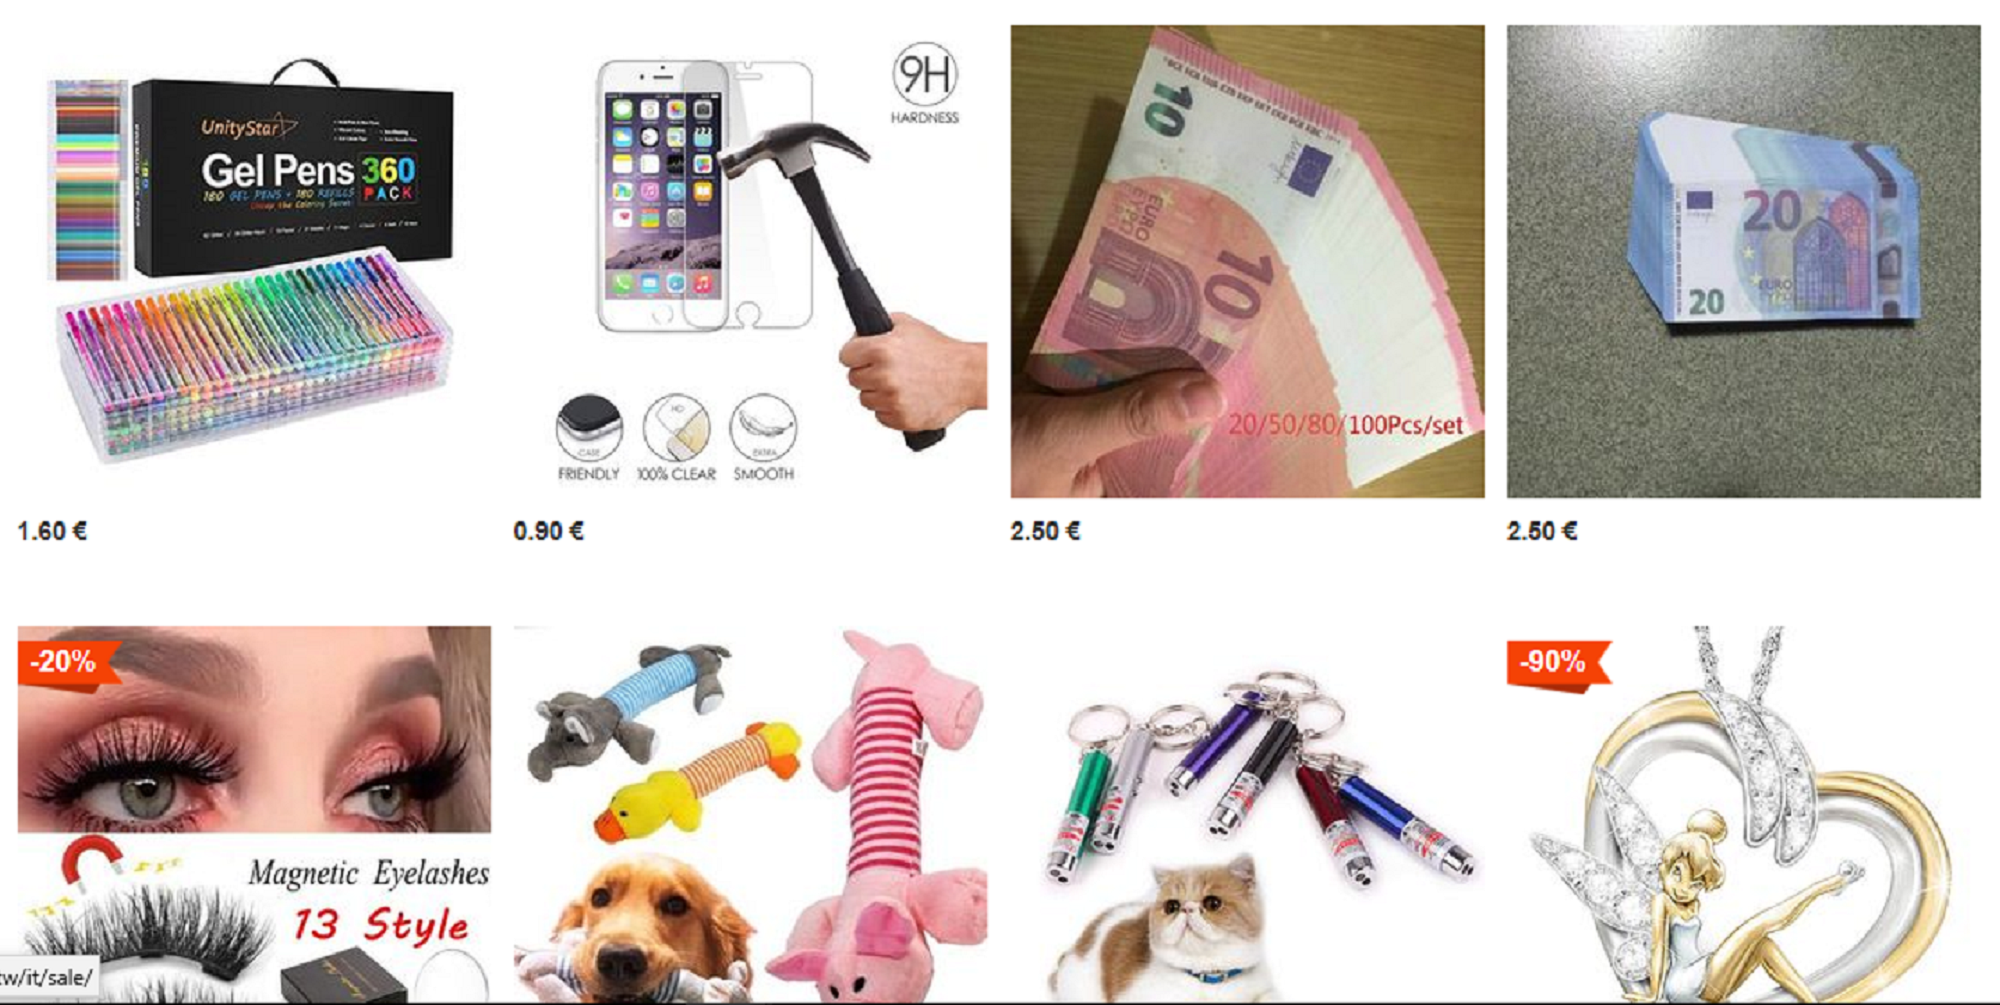 Schermata del sito vova.com dove si possono vedere tutti i vari articoli in vendita come la copertura infrangibile per il telefonino, i portachiavi e i giocattoli per animali